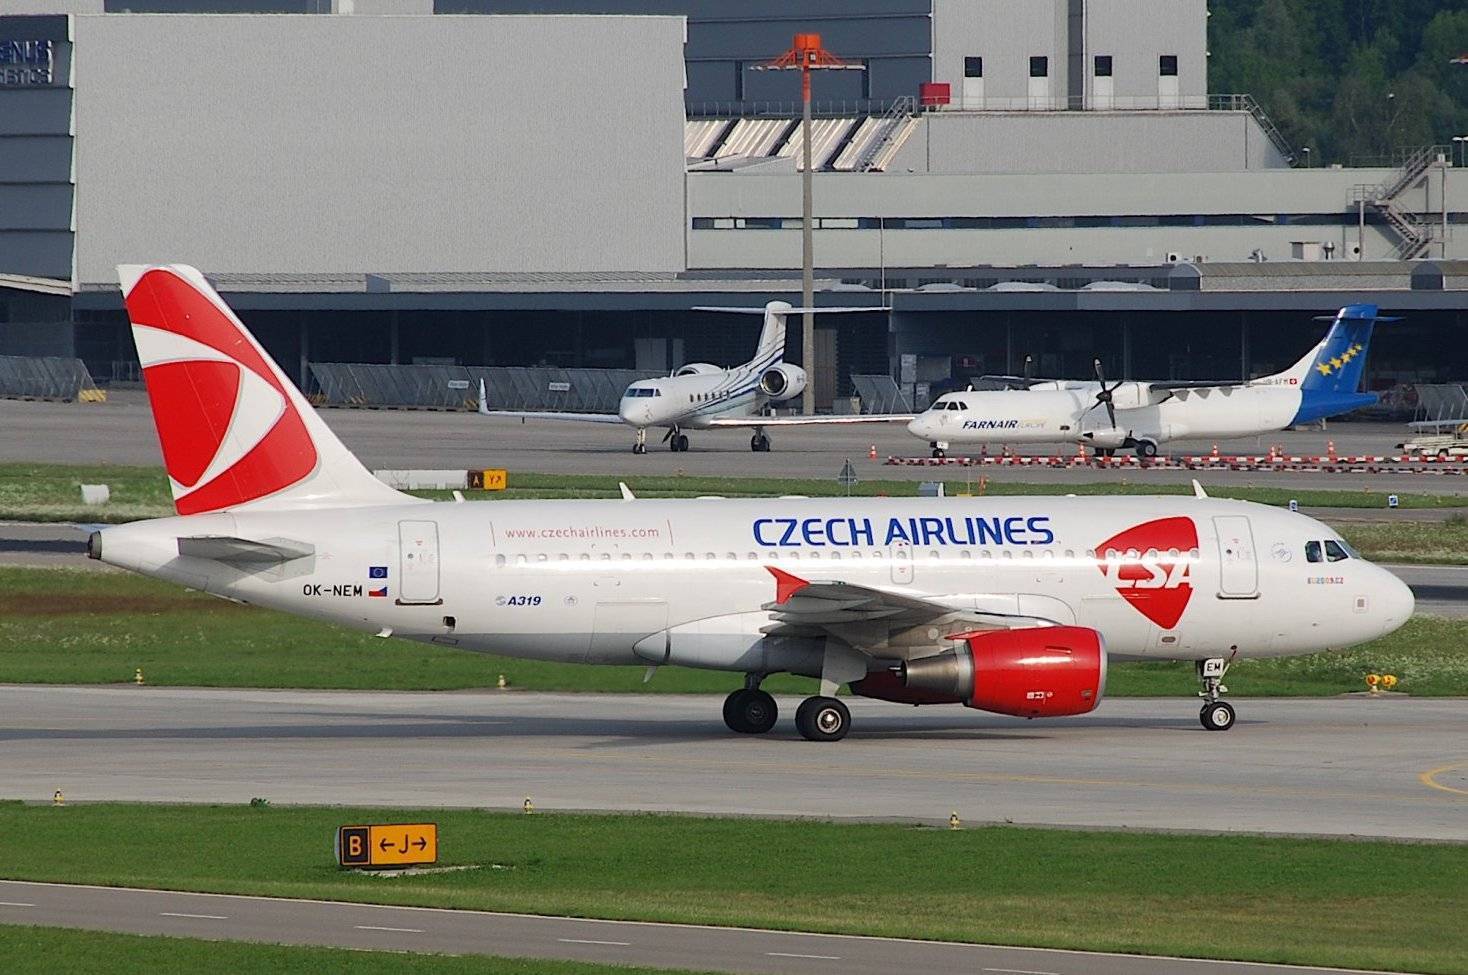 Csa czech airlines - отзывы пассажиров 2017-2018 про авиакомпанию чешские авиалинии - страница №2